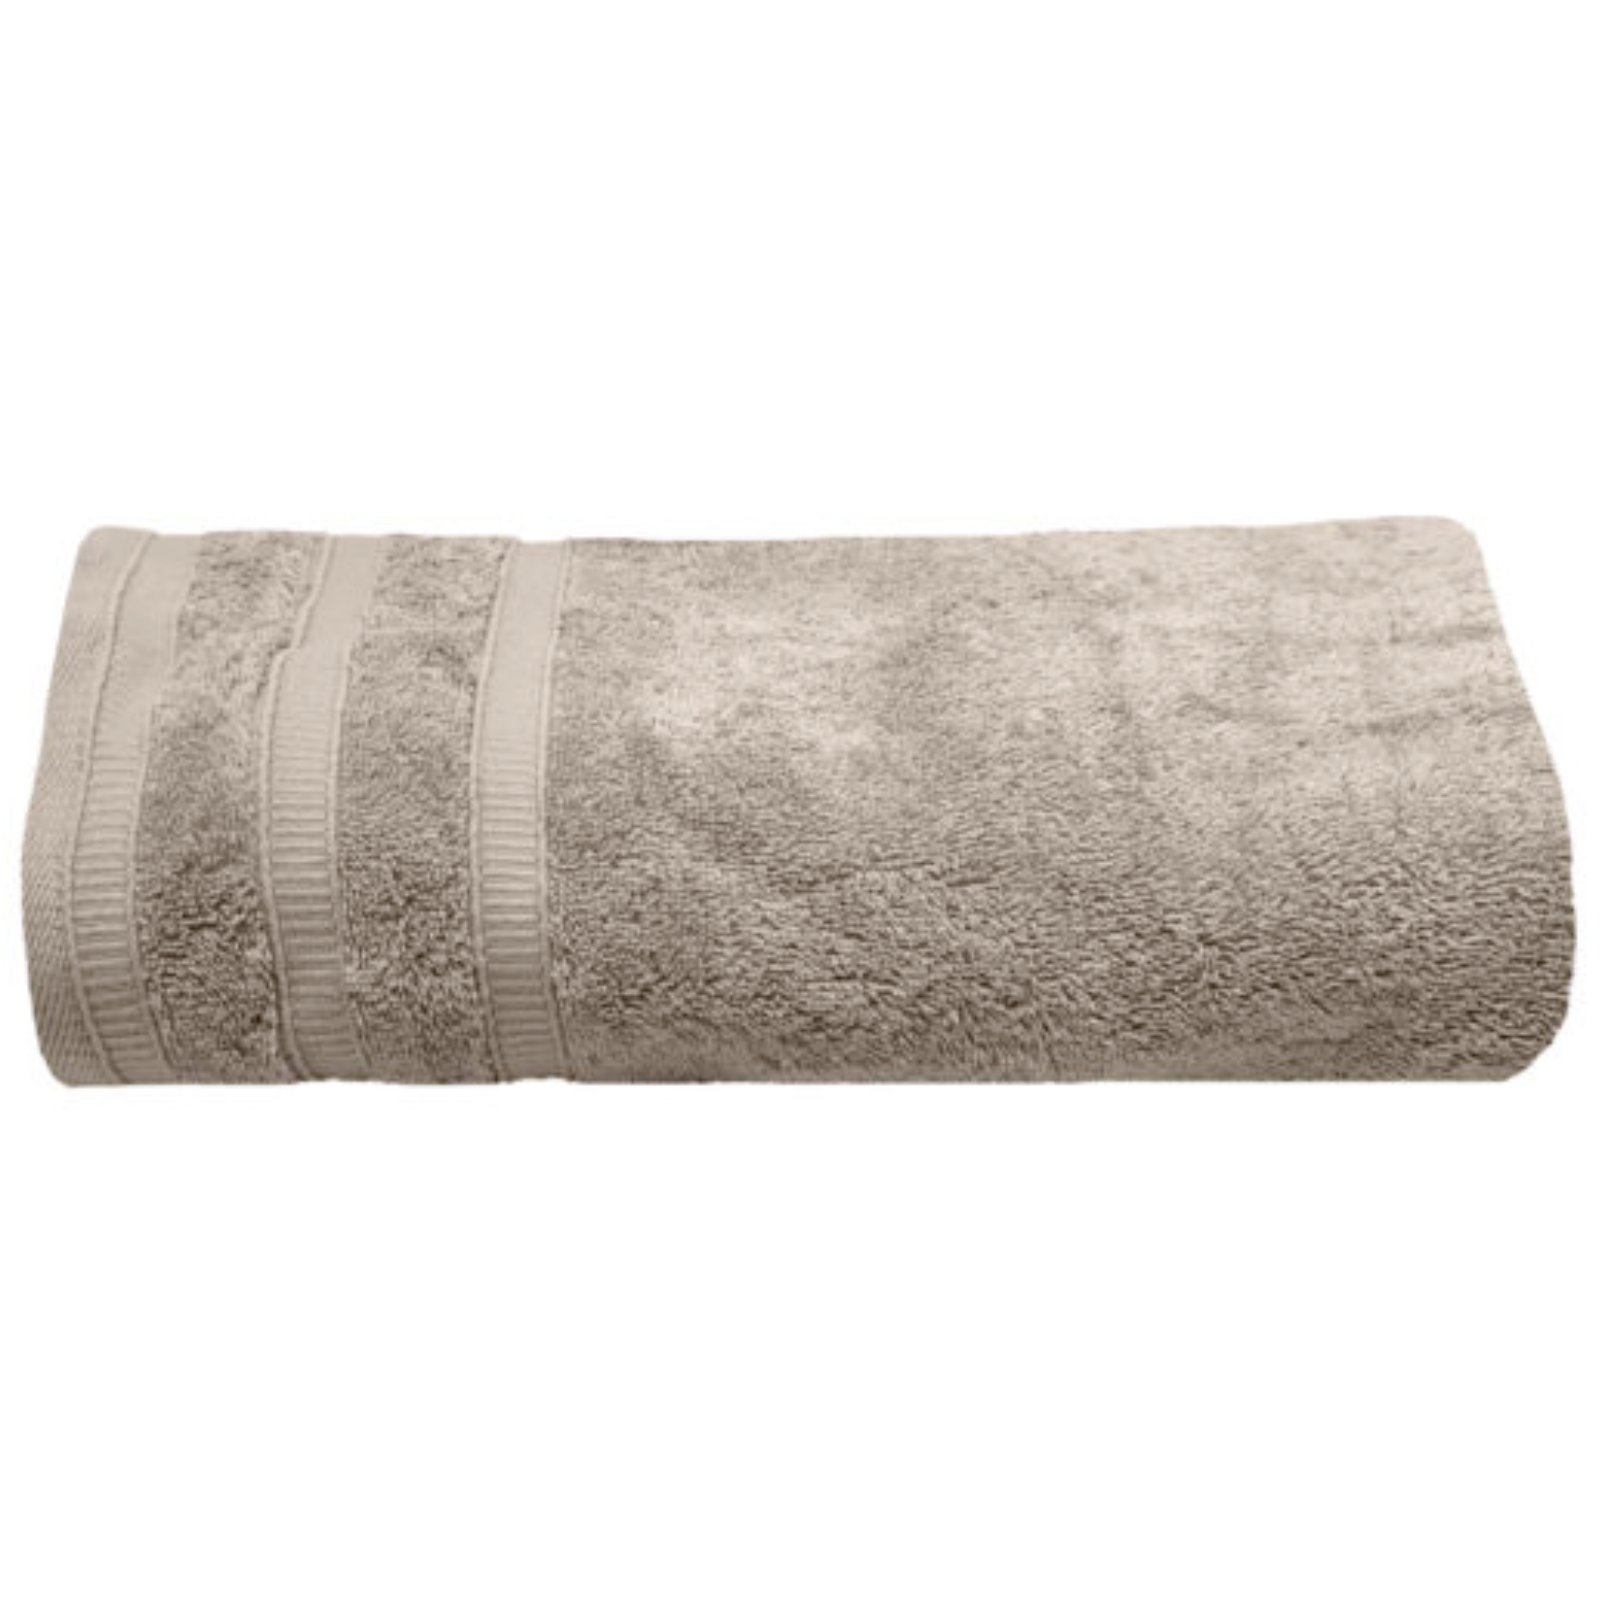 Asciugamani da palestra o bagno in cotone color ecrù 60x100